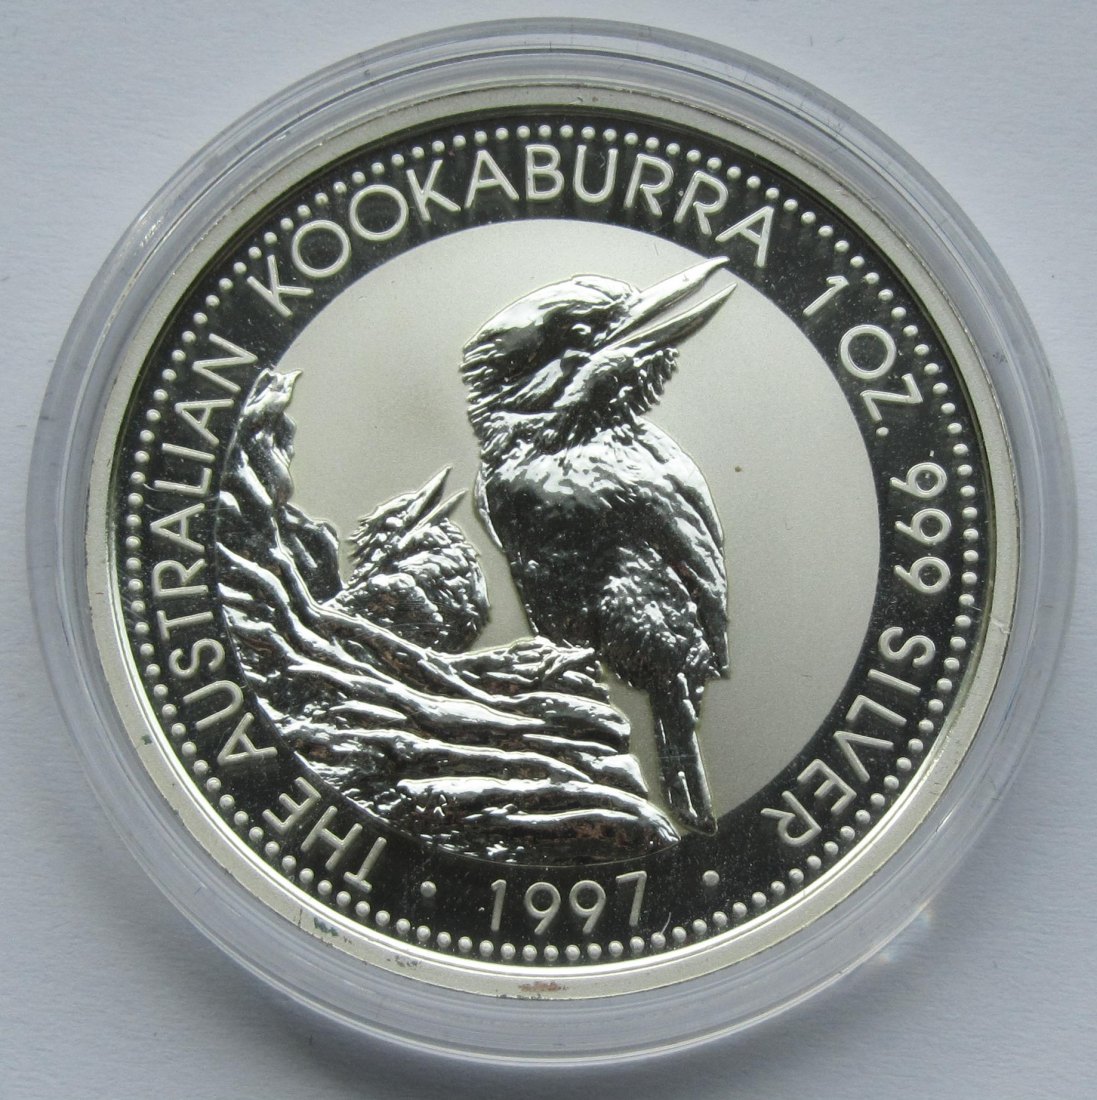  Australien: Silberunze Kookaburra 1997   